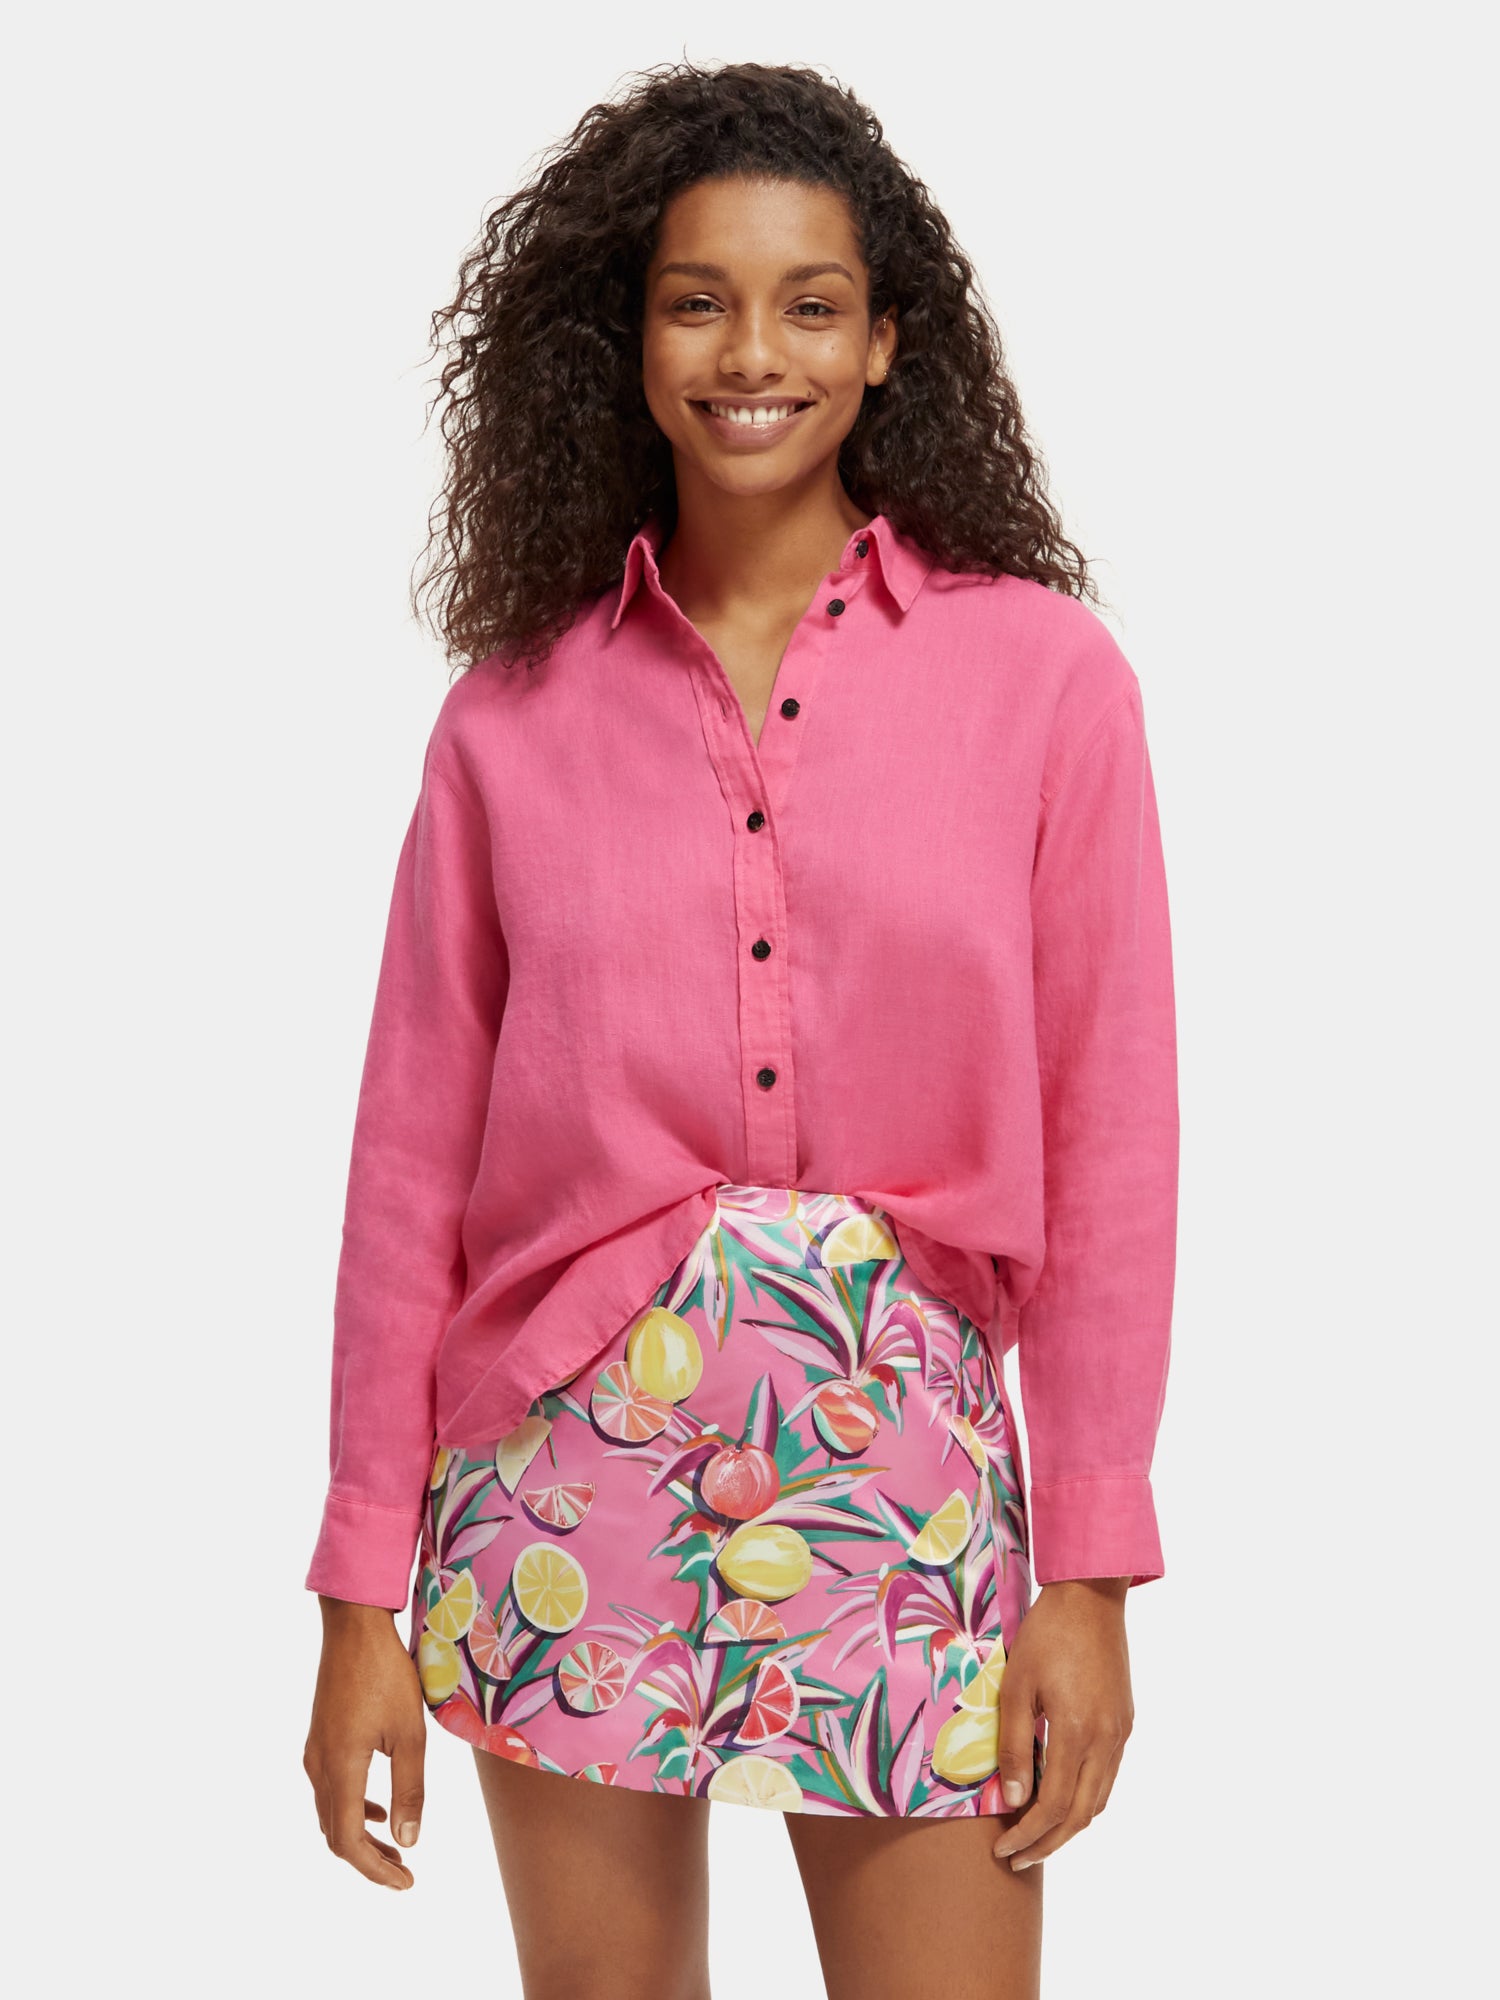 Oversized linen shirt - Pink Punch